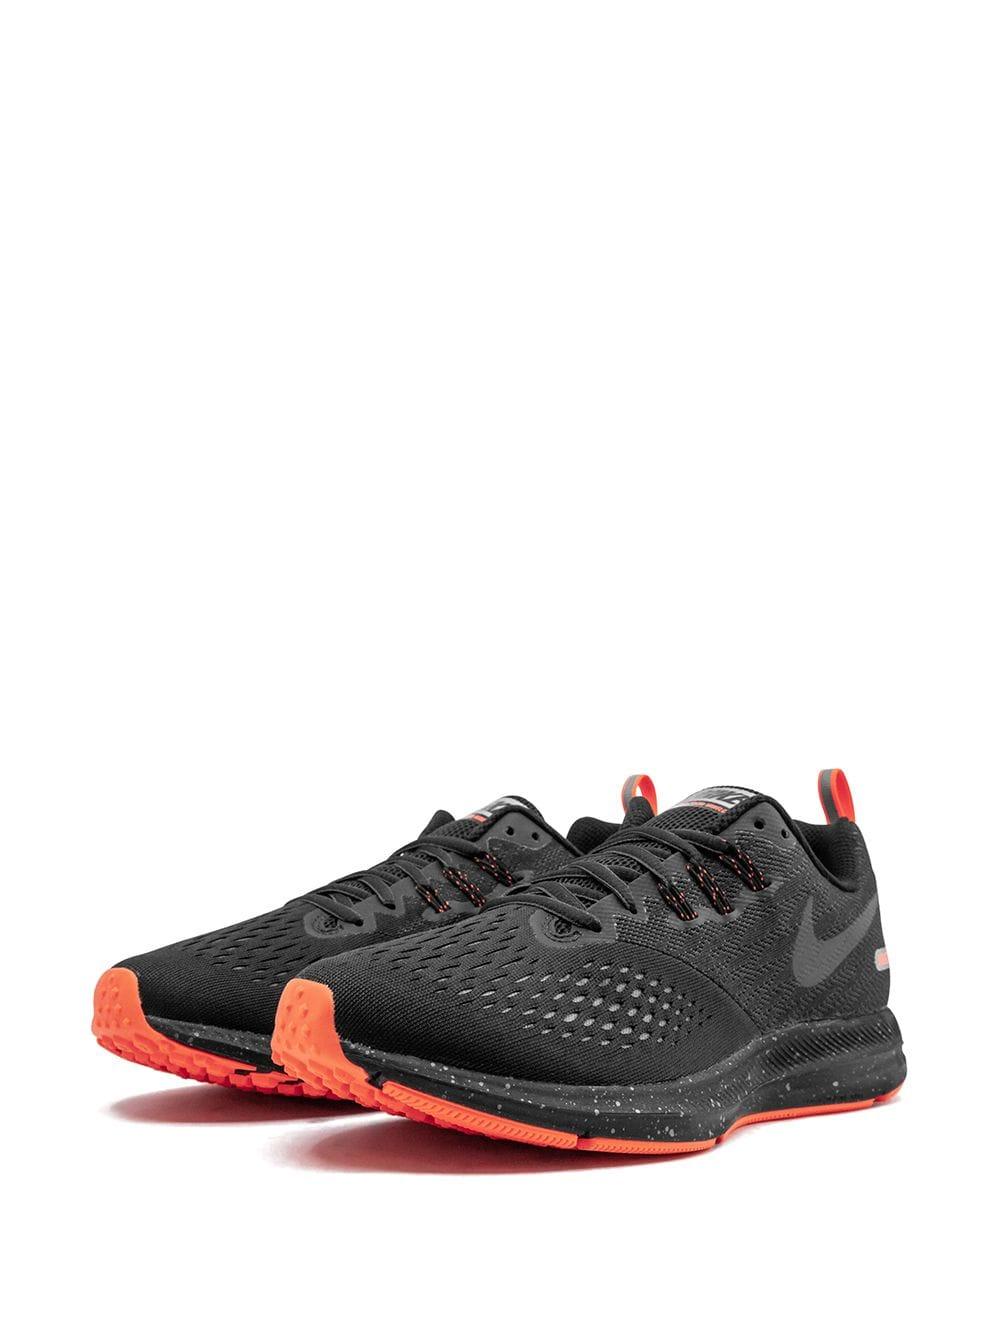 Nike Lace Zoom Winflo 4 Shield Sneakers in 8 (Black) for Men - Lyst